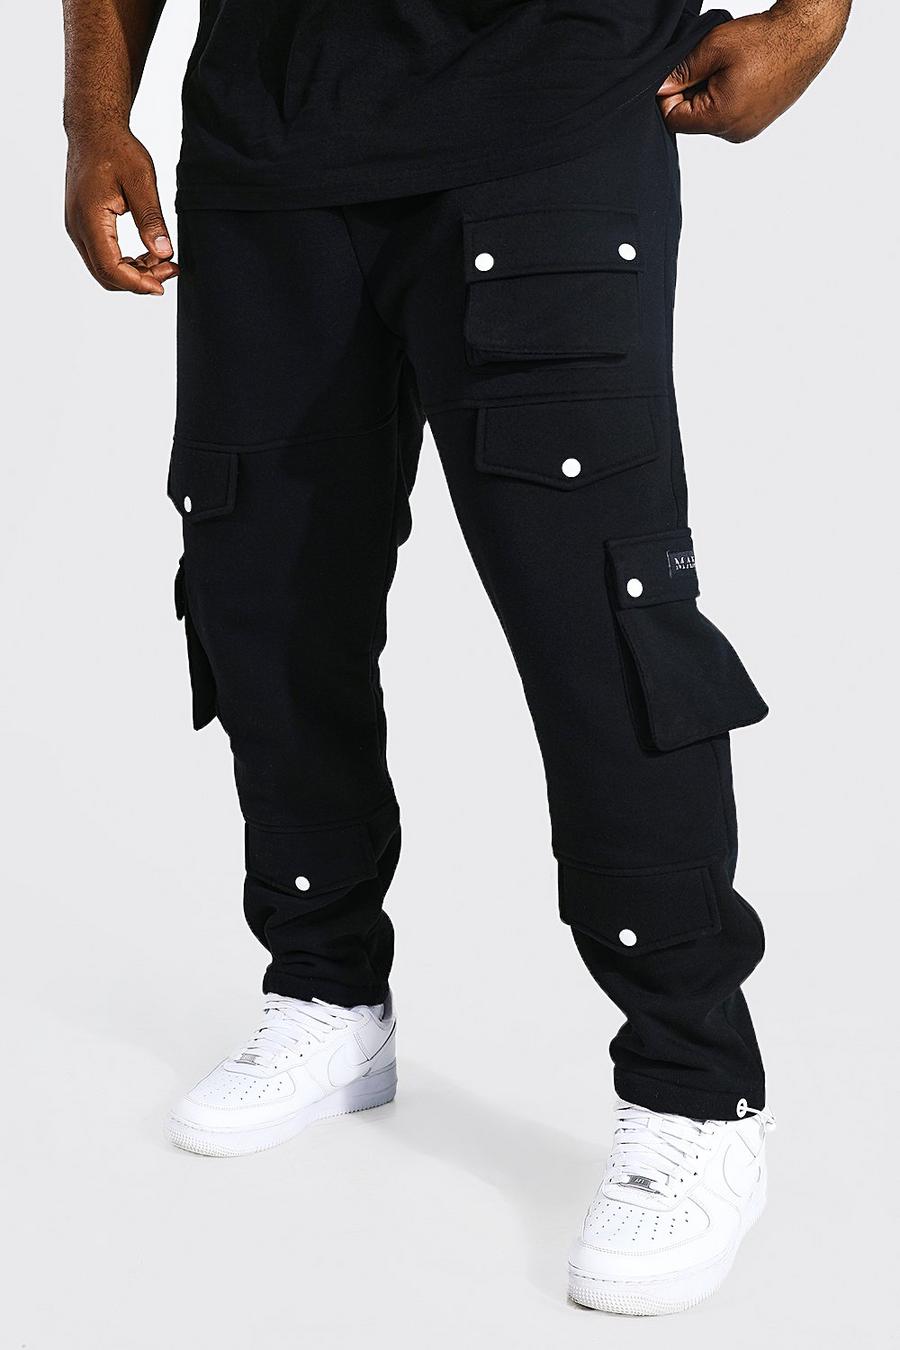 Pantaloni tuta Plus Size con tasche Cargo e polsini alle caviglie, Black negro image number 1